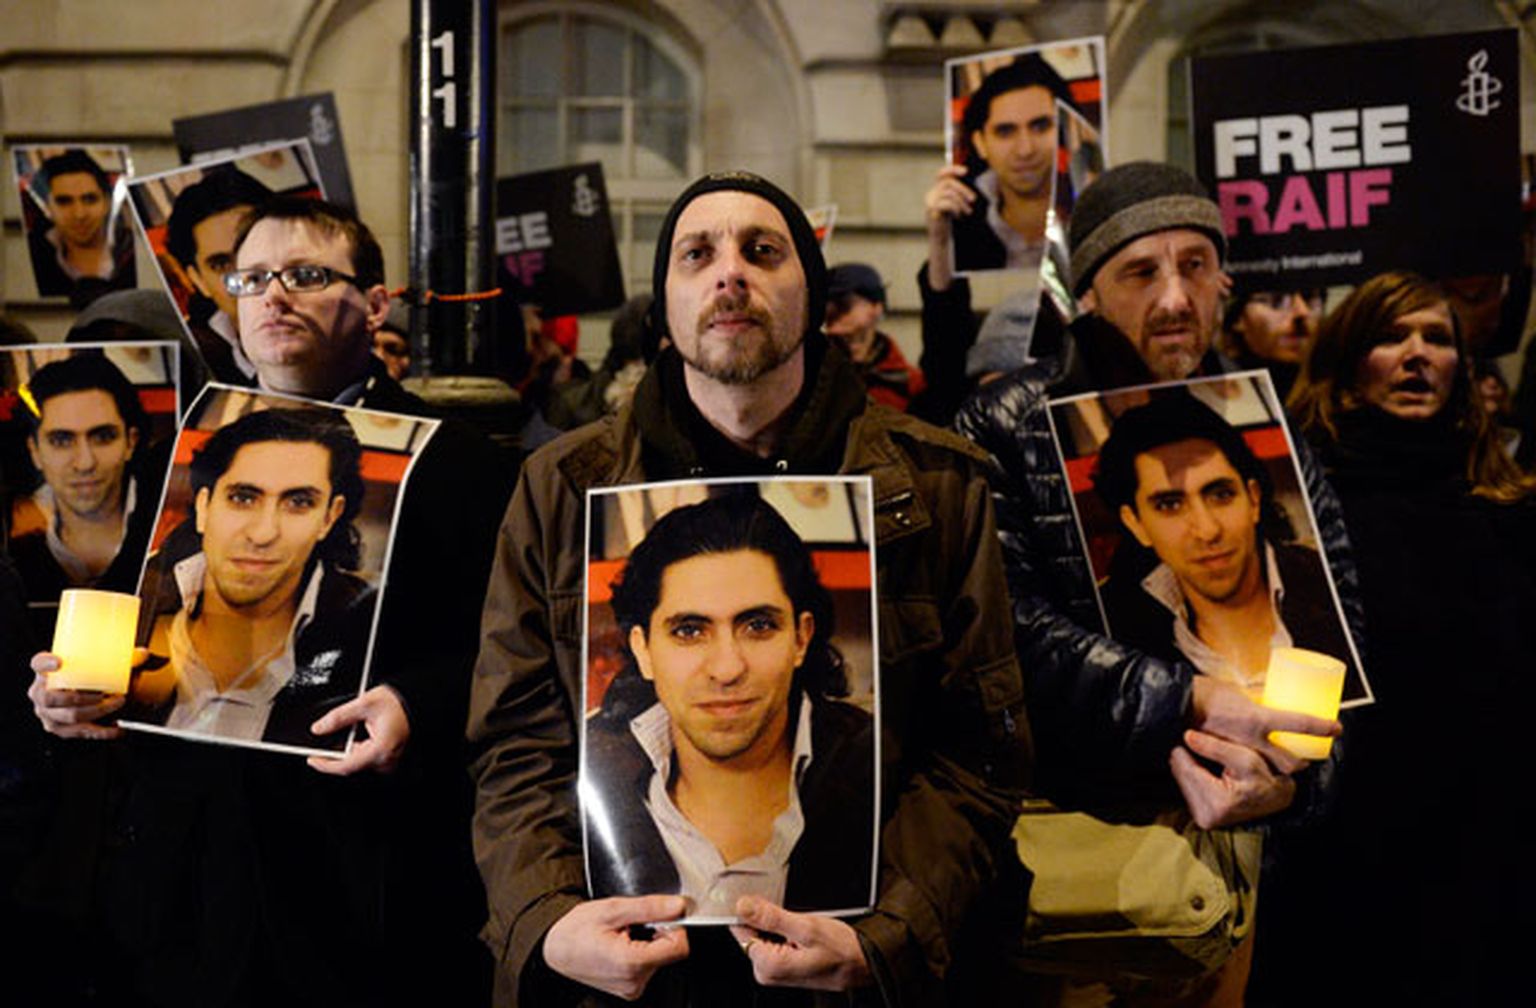 Protestētāji ar Raifa Badavi attēliem rokās